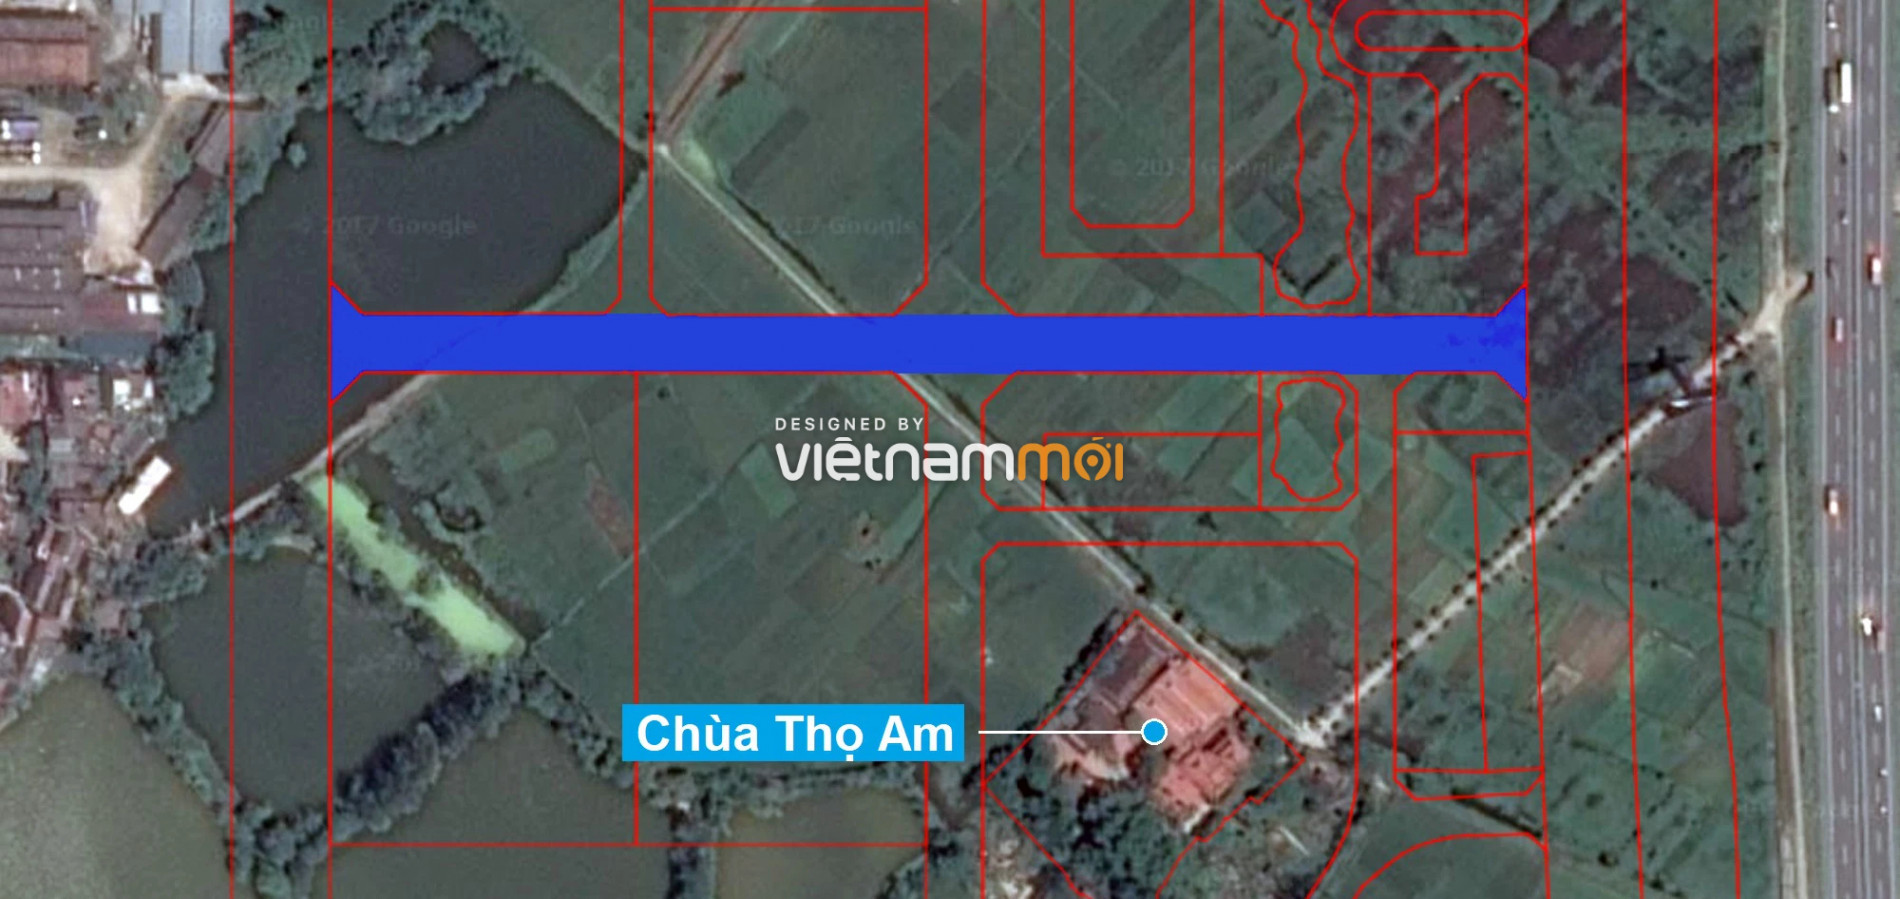  Những khu đất sắp thu hồi để mở đường ở xã Liên Ninh, Thanh Trì, Hà Nội (phần 6) - Ảnh 8.